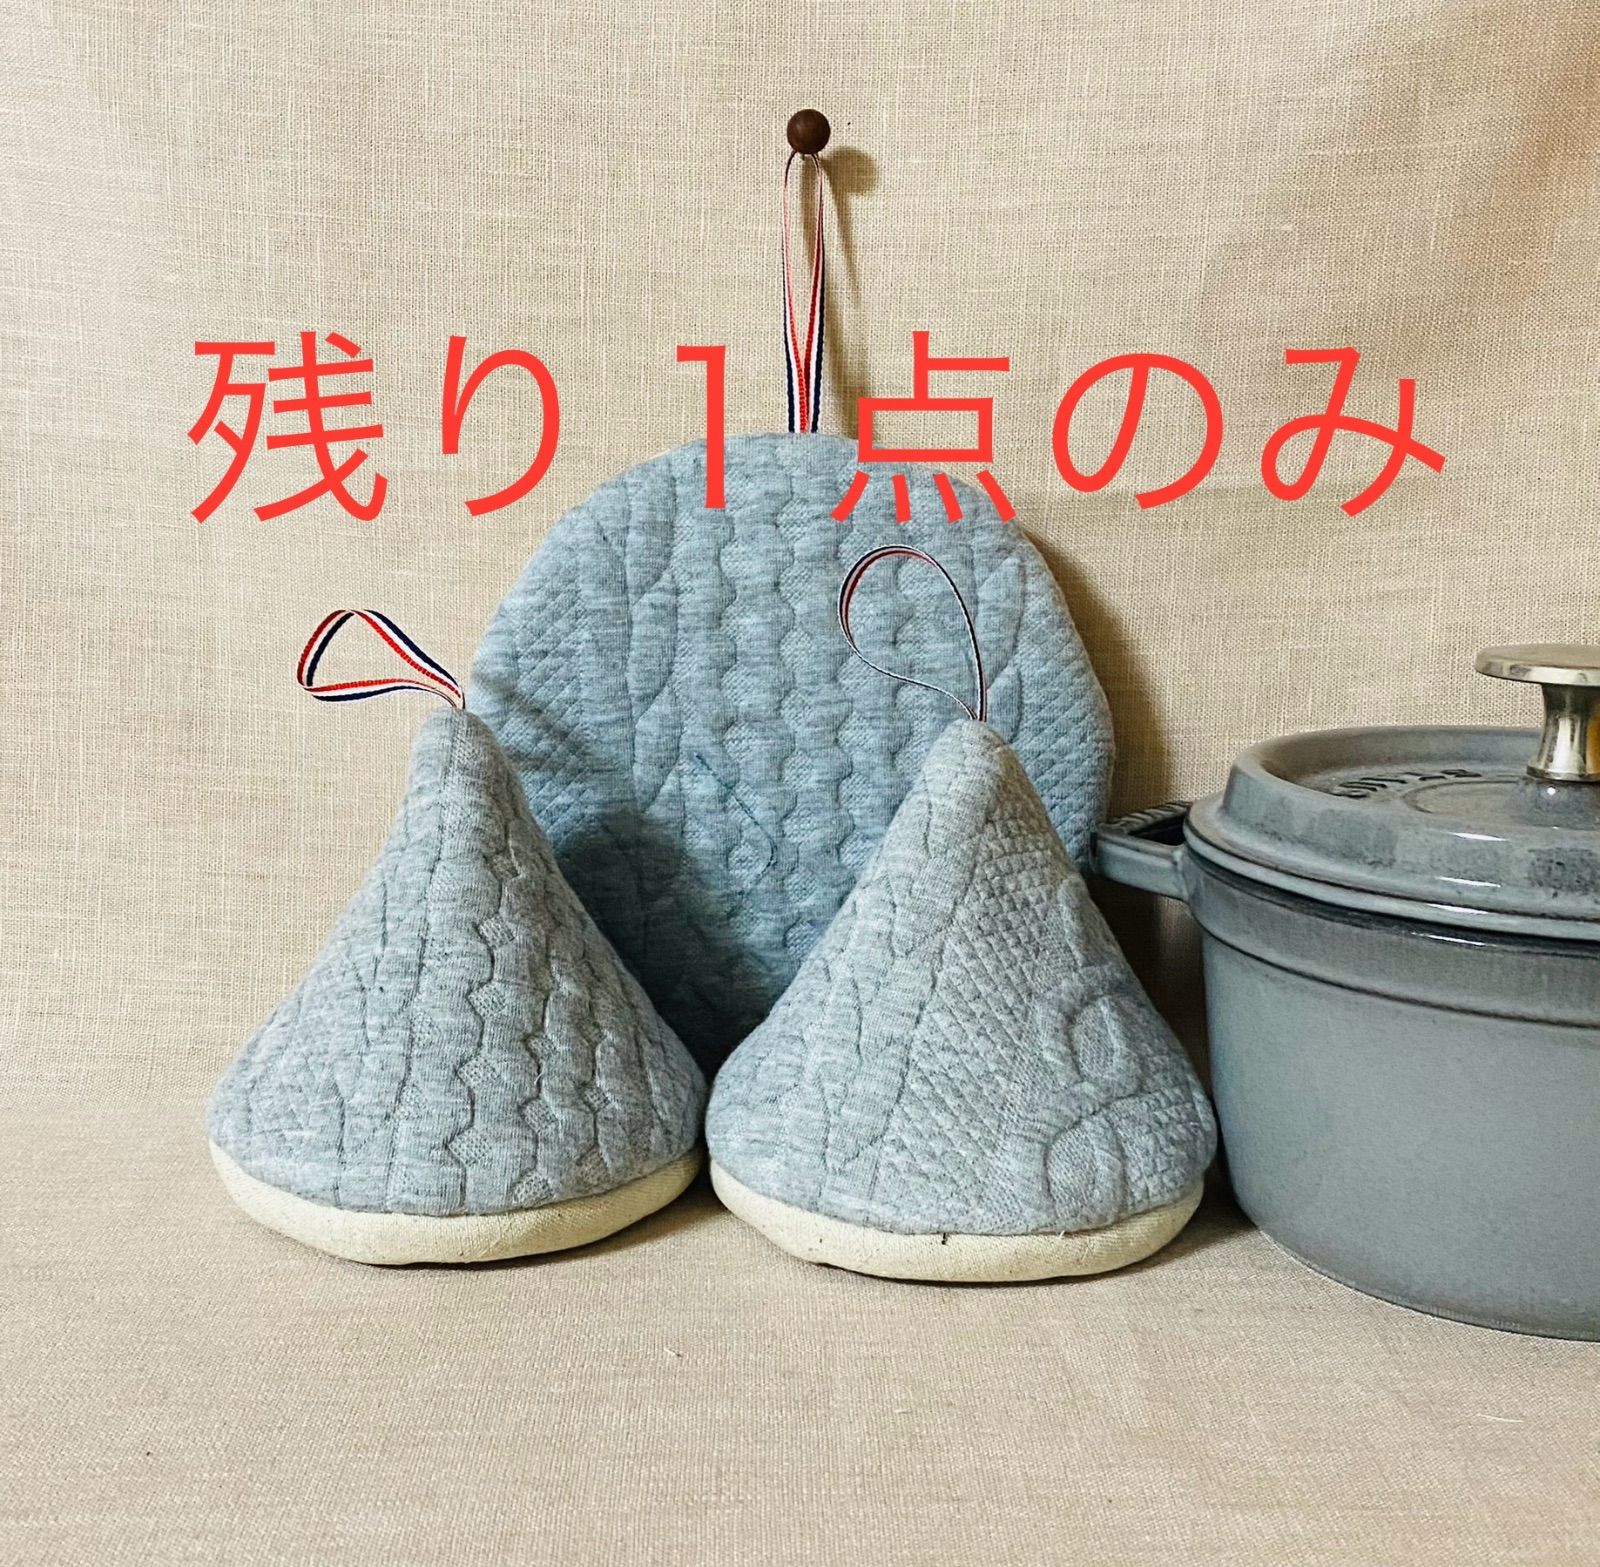 ニット模様の可愛い鍋つかみと鍋敷き - ポット・急須